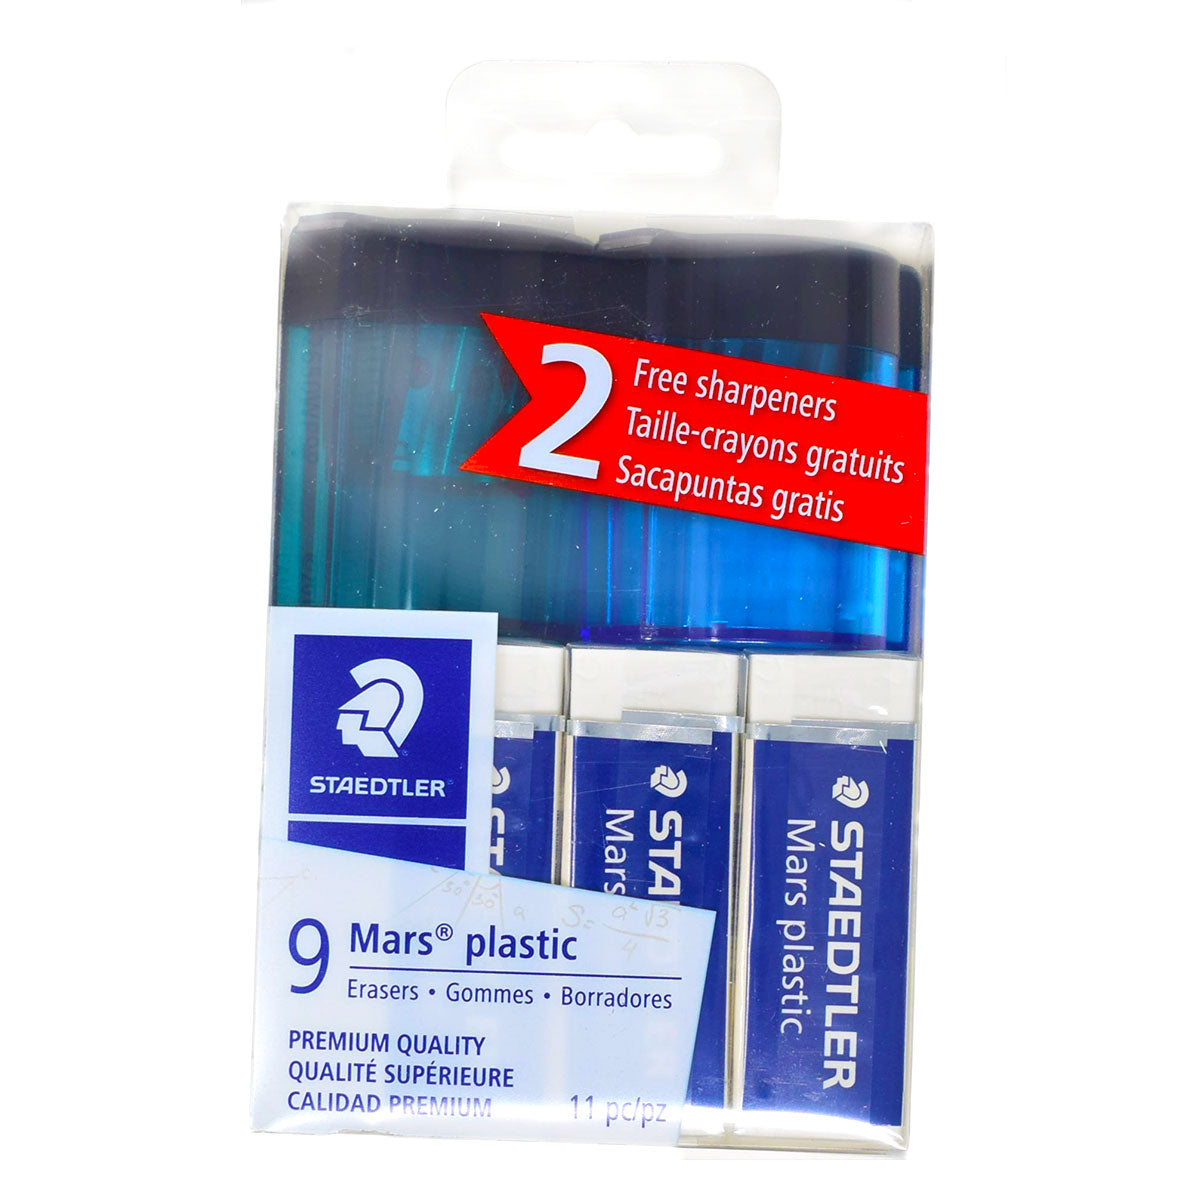 Staedtler Mars Plastic Erasers Pack of 9 + 2 Free Sharpeners Blue and Teal  Staedtler Erasers